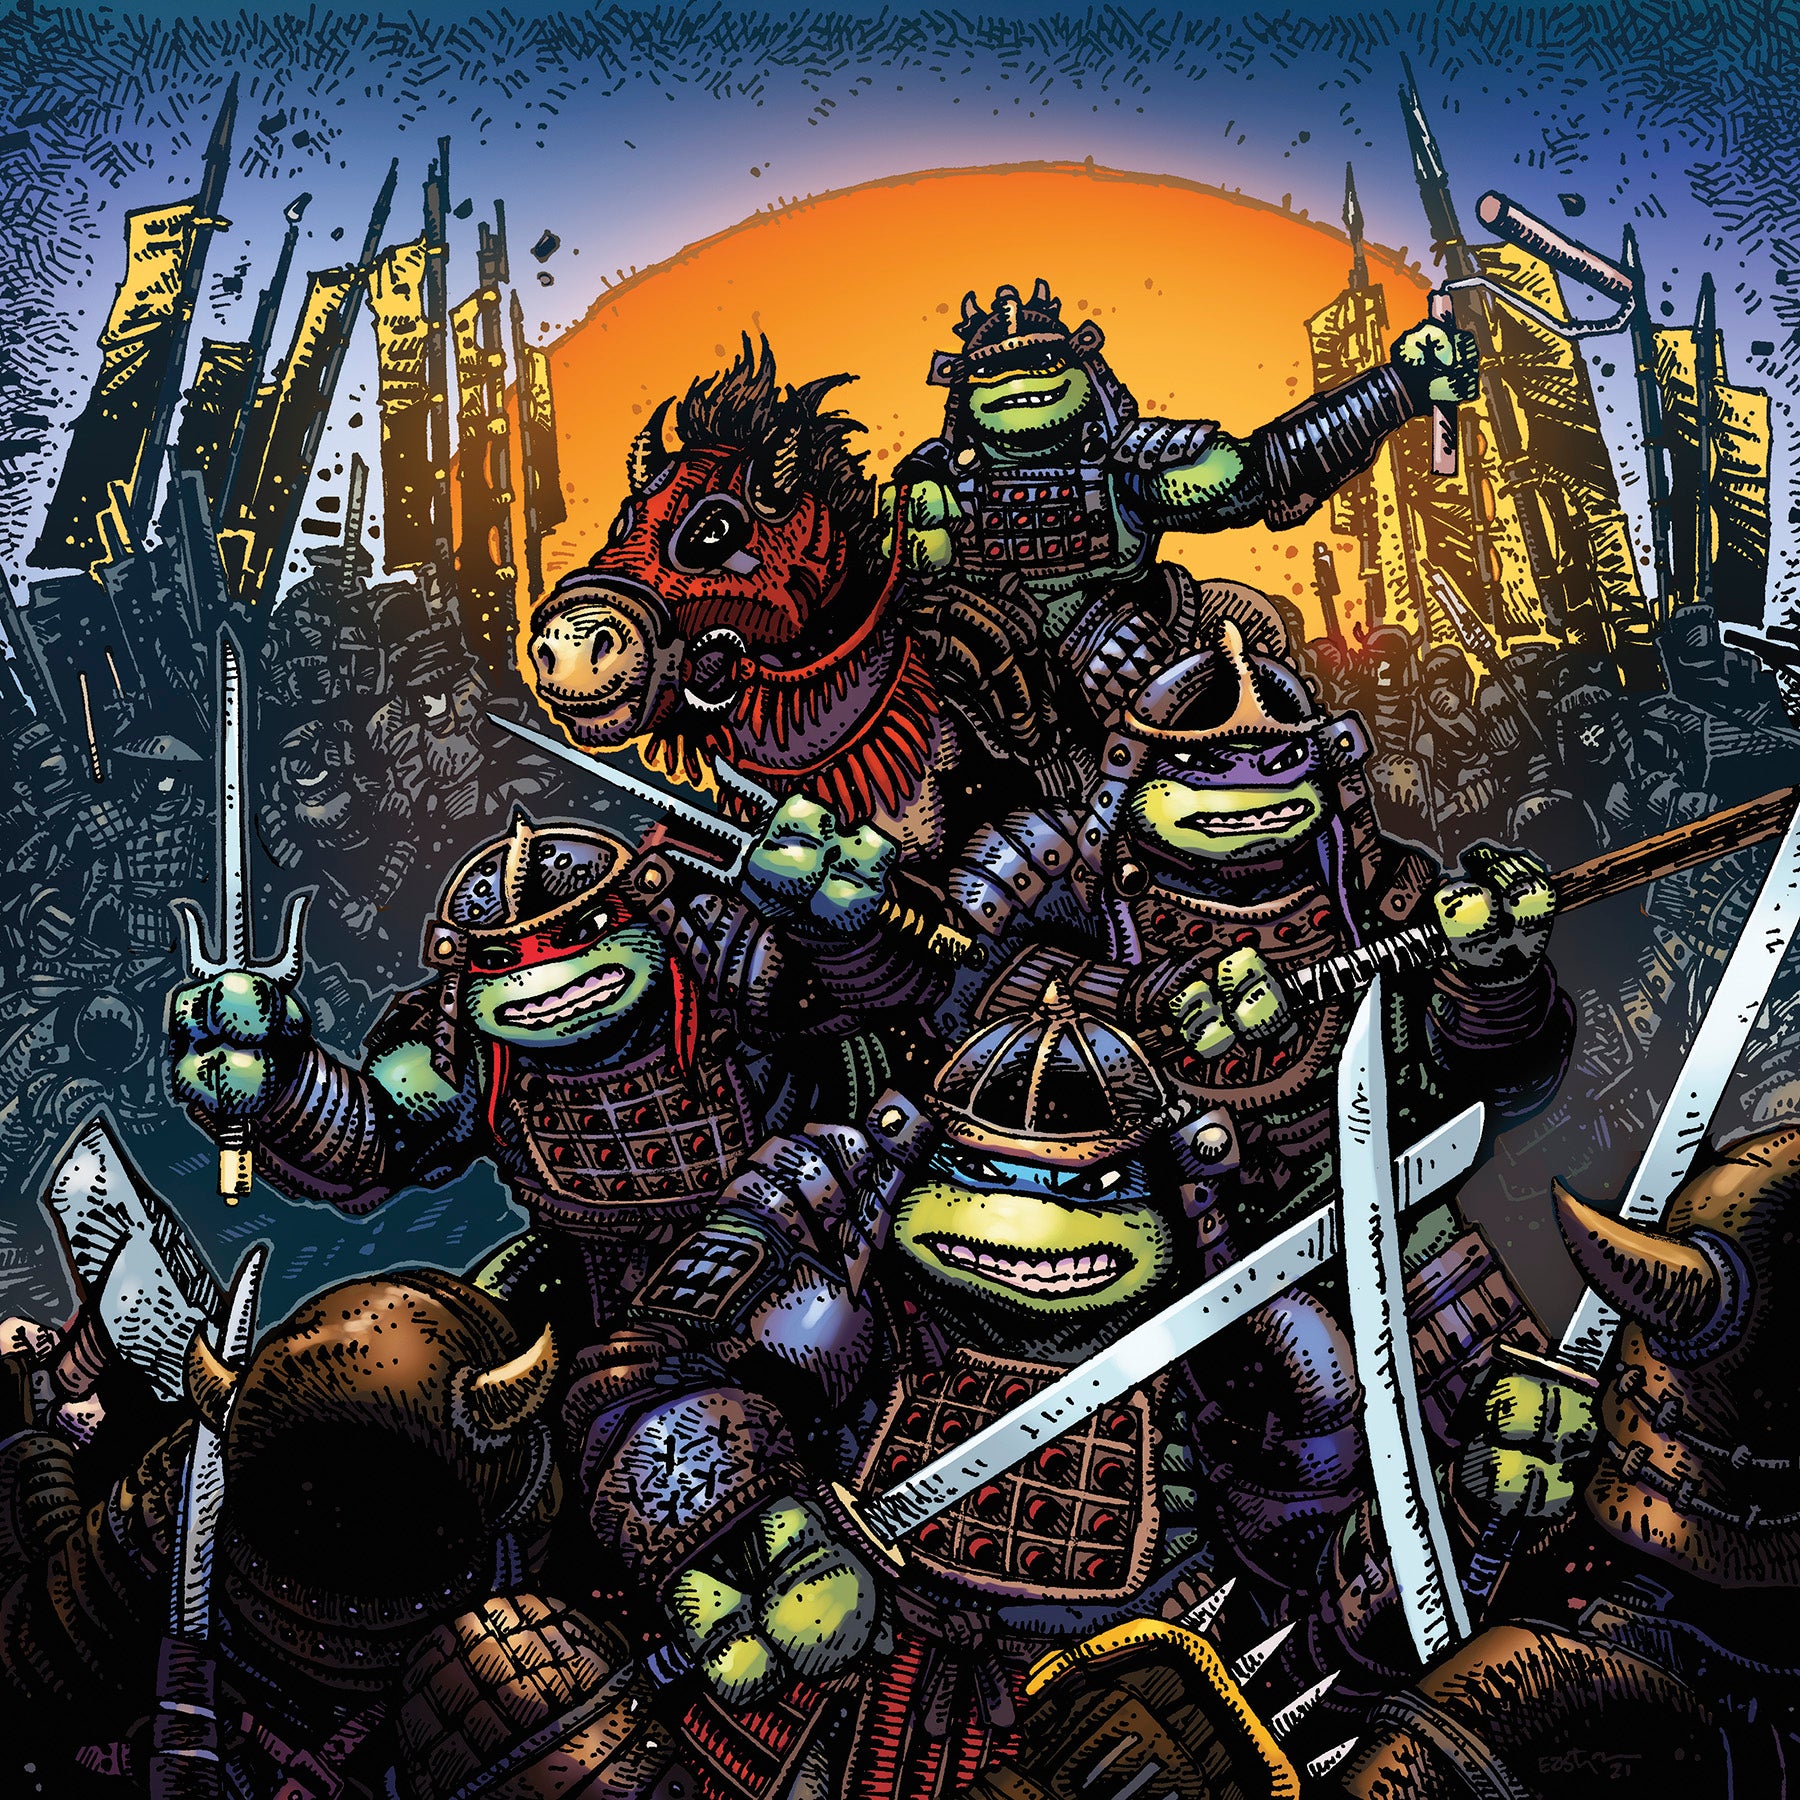 Tartarugas Ninjas / Teenage Mutant Ninja Turtles